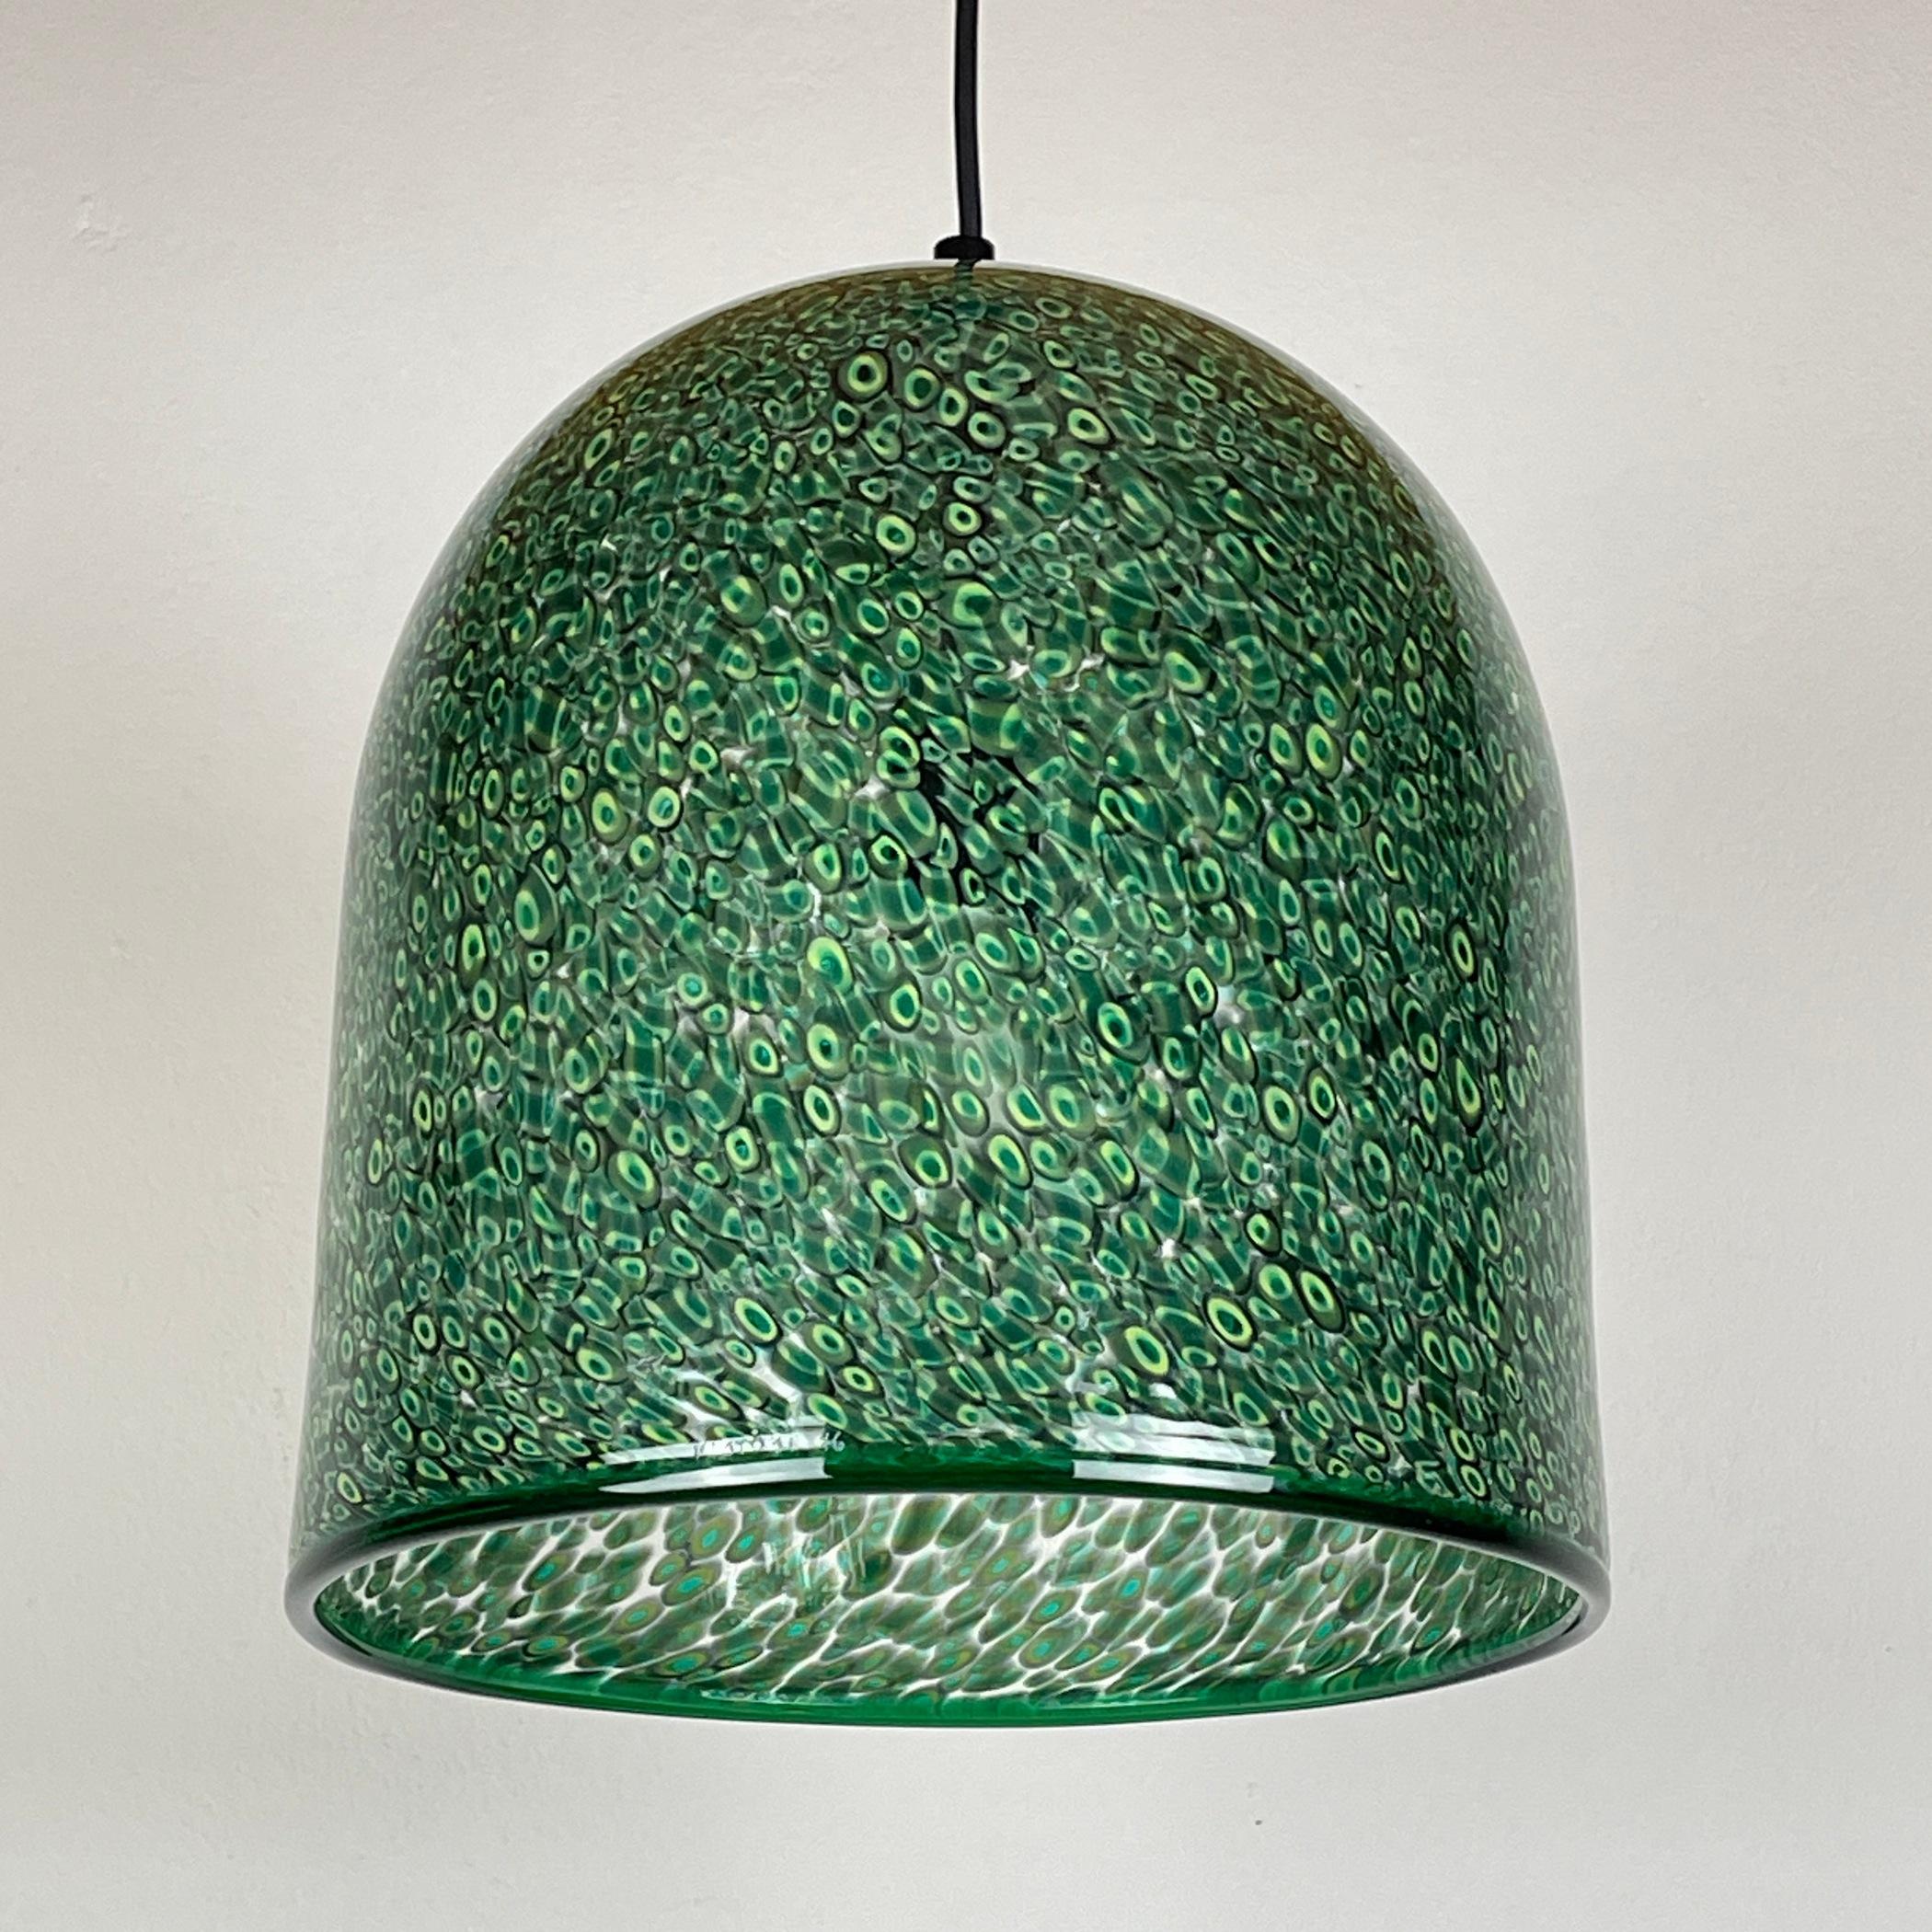  Green murano pendant lamp Neverrino by Gae Aulenti for Vistosi Italy 1976s 2